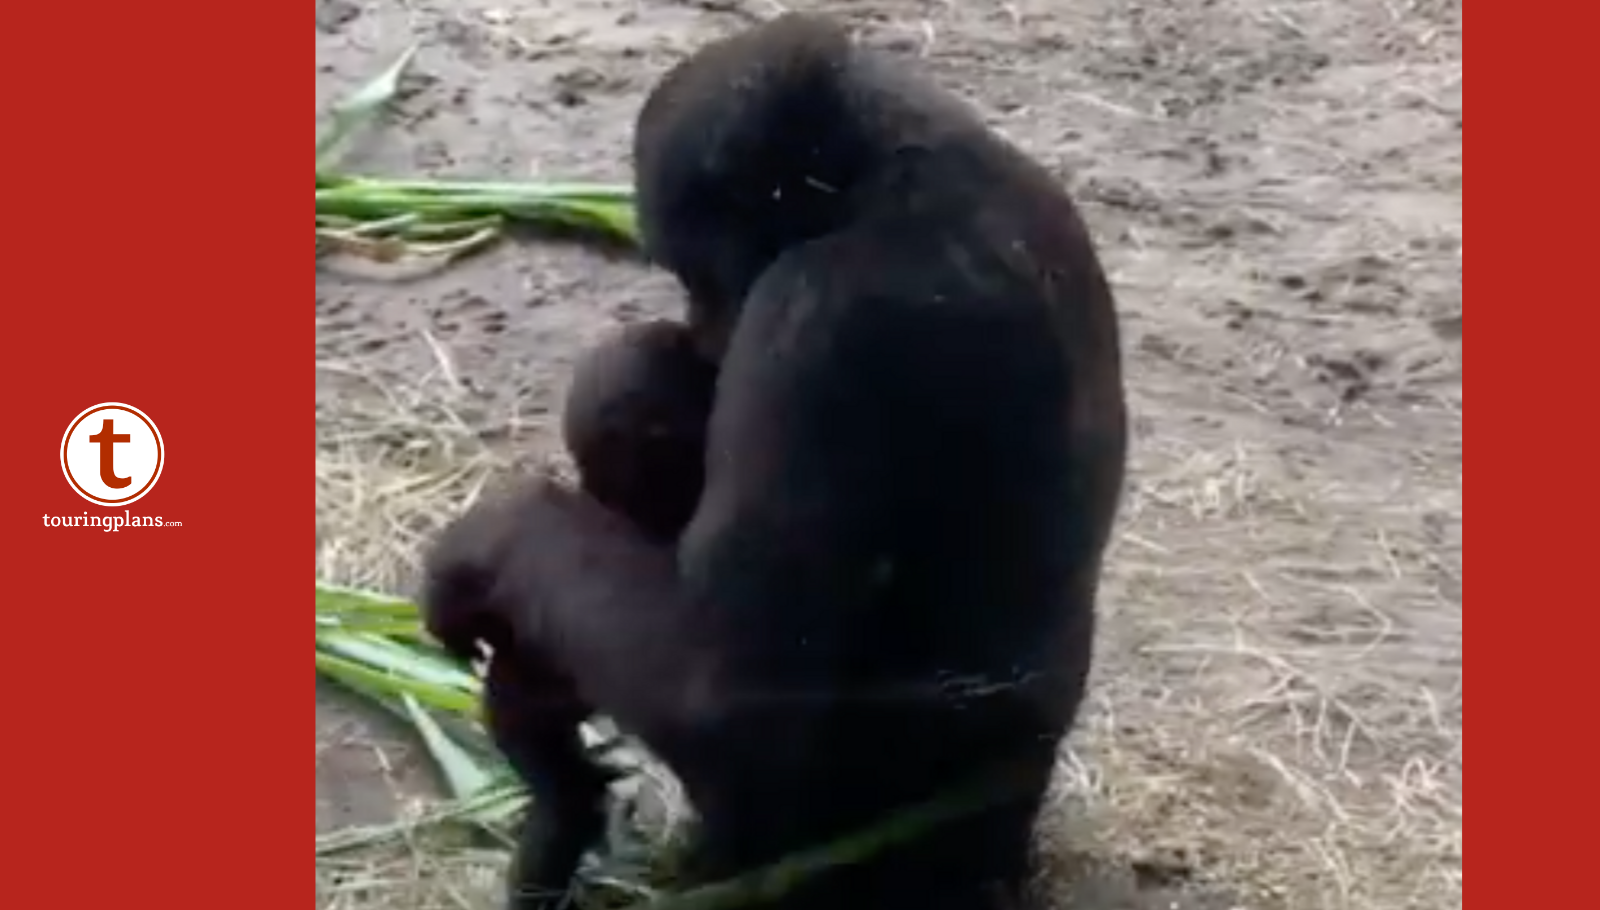 gorillas mating gif